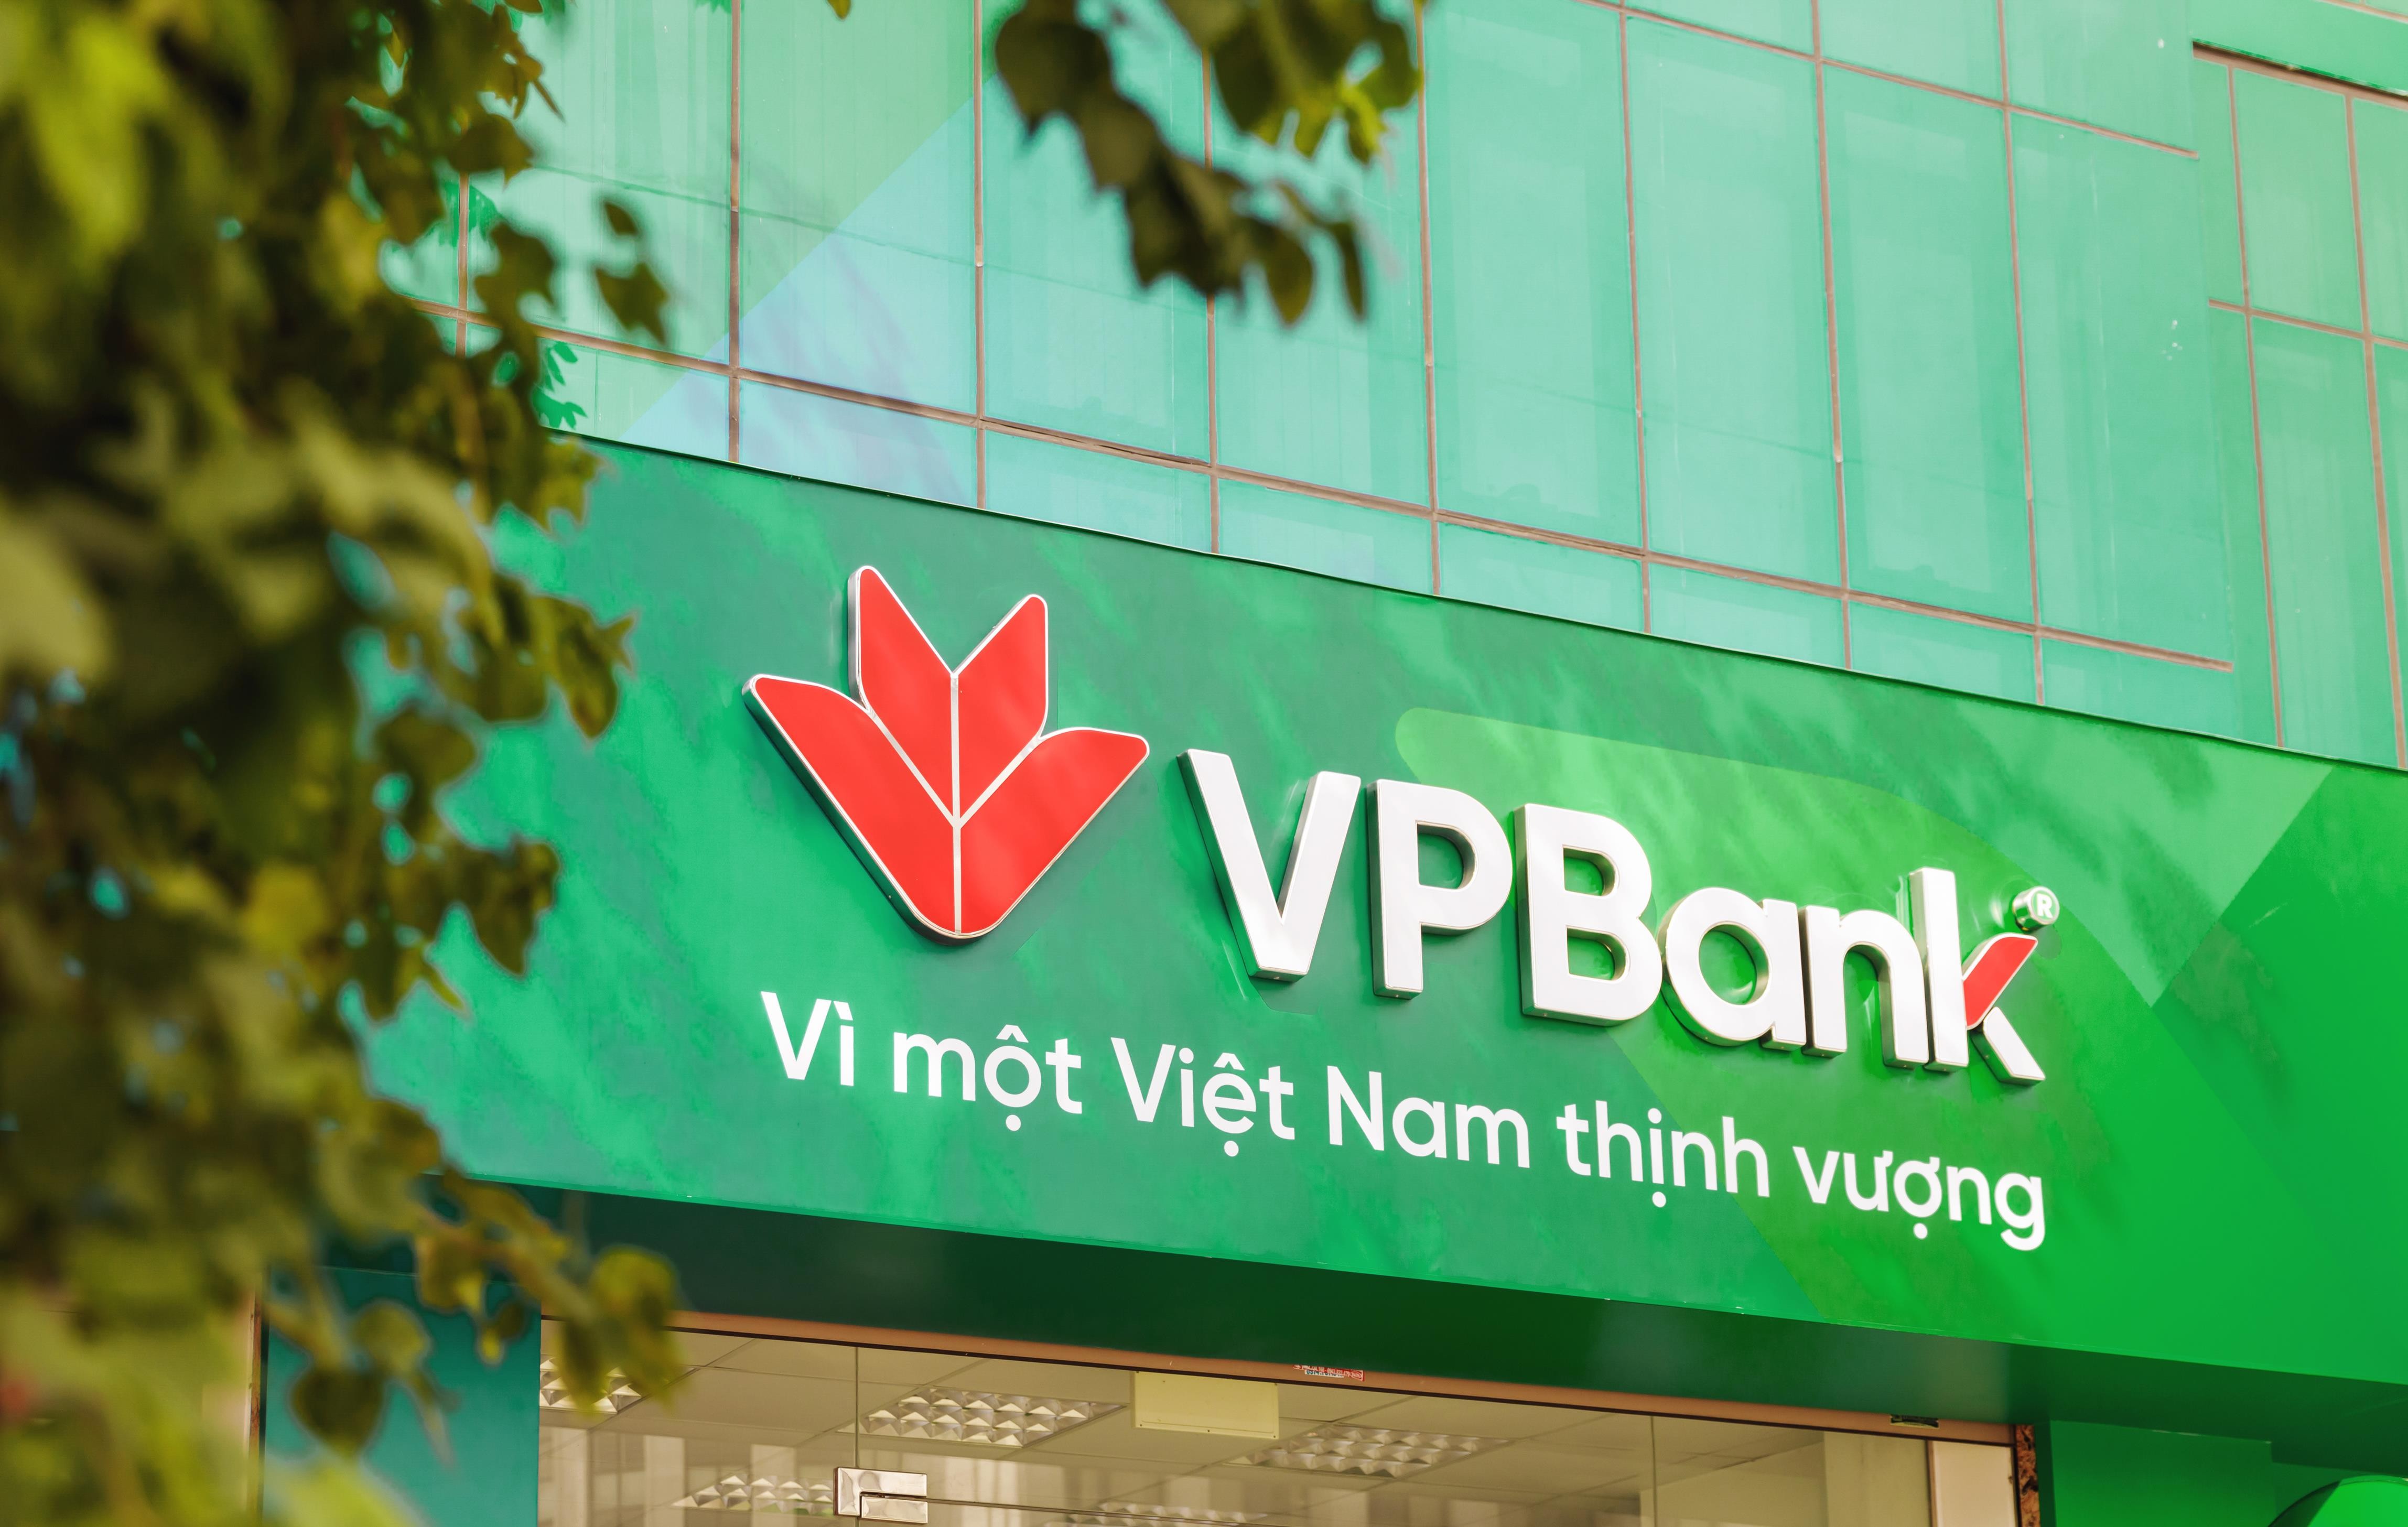 VPBank lộ kế hoạch nhận chuyển giao ngân hàng yếu kém